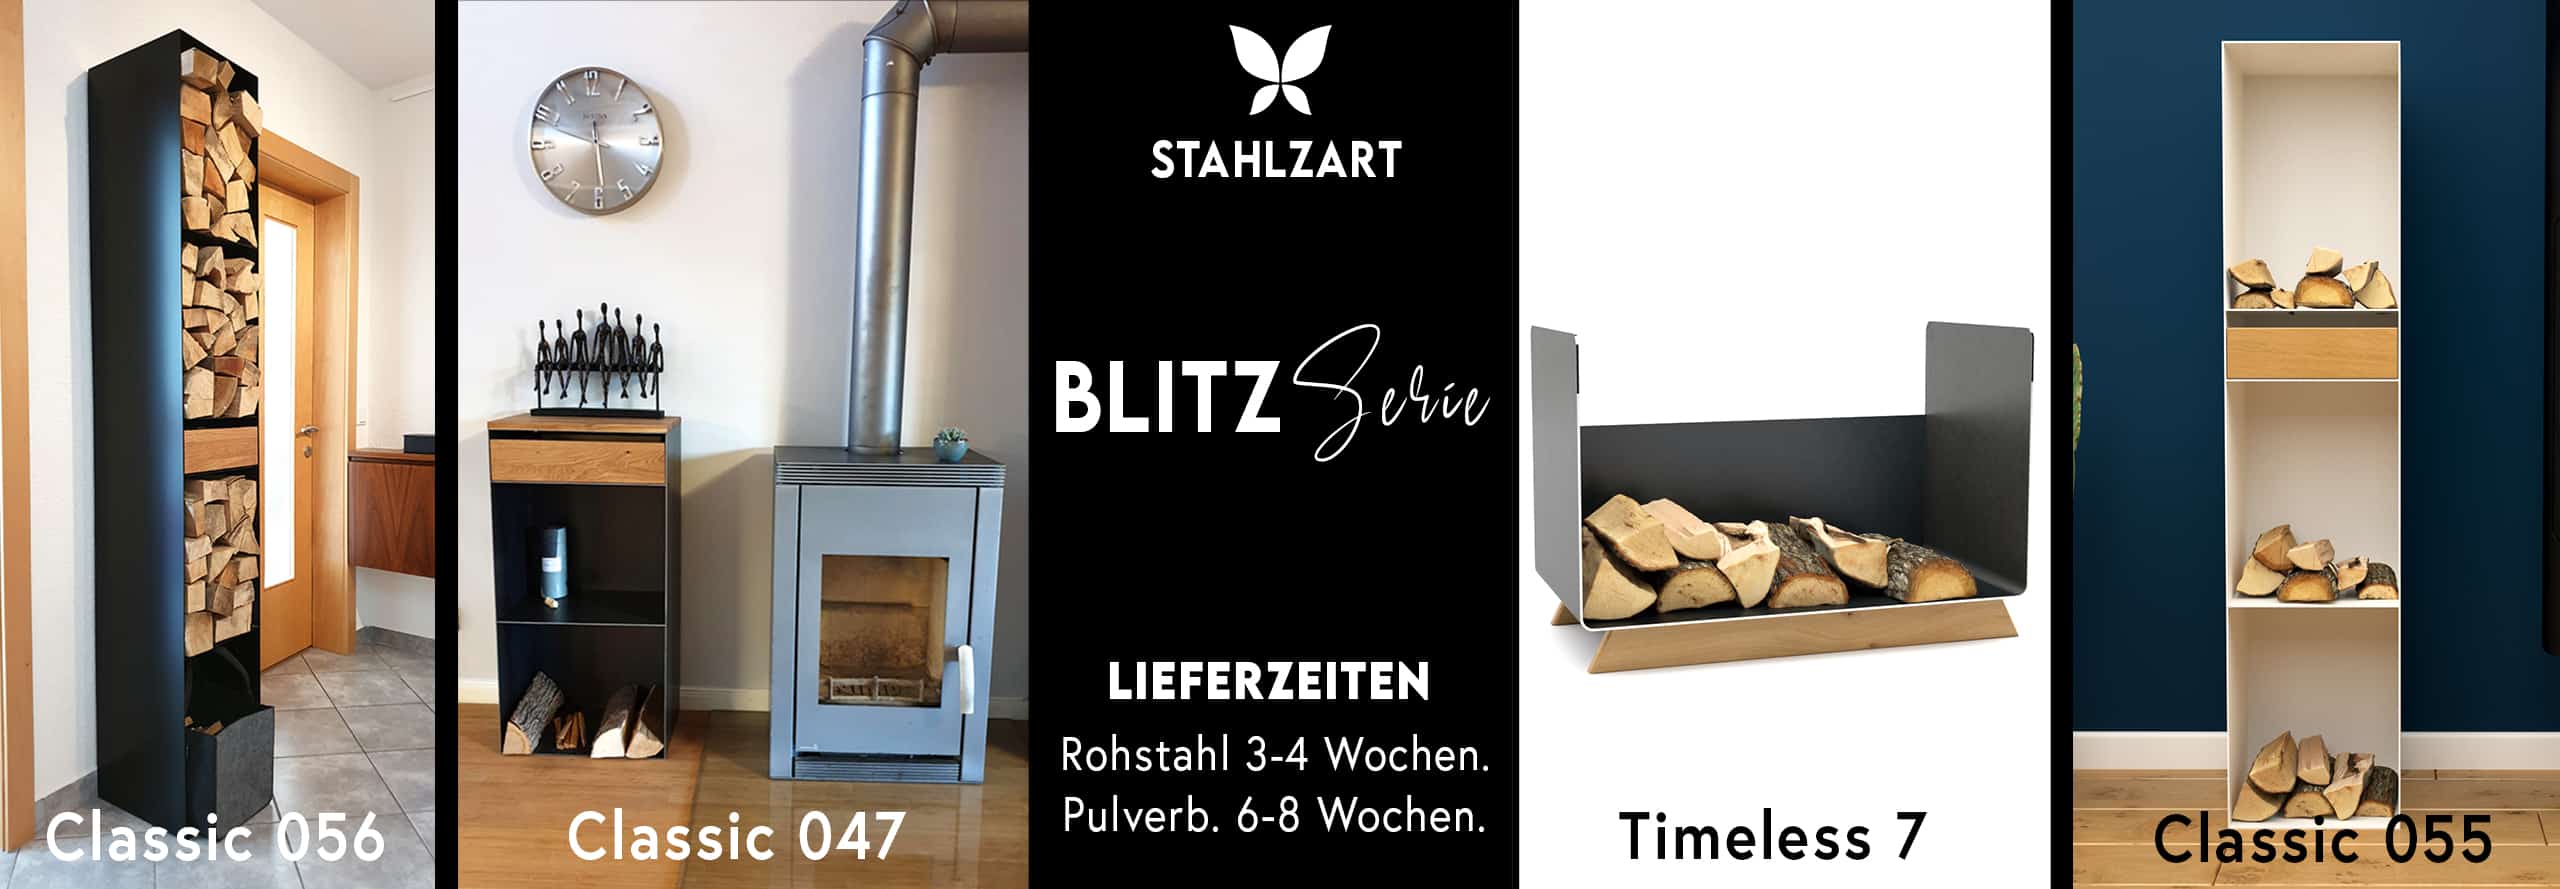 stahlzart-moebel-blitz-serie-kaminholzregal-metall-innen-schwarz-stahl-eiche-massivholz-modern-design-wohnzimmer-minimalistisch-classic-047-055-056-timeless-7